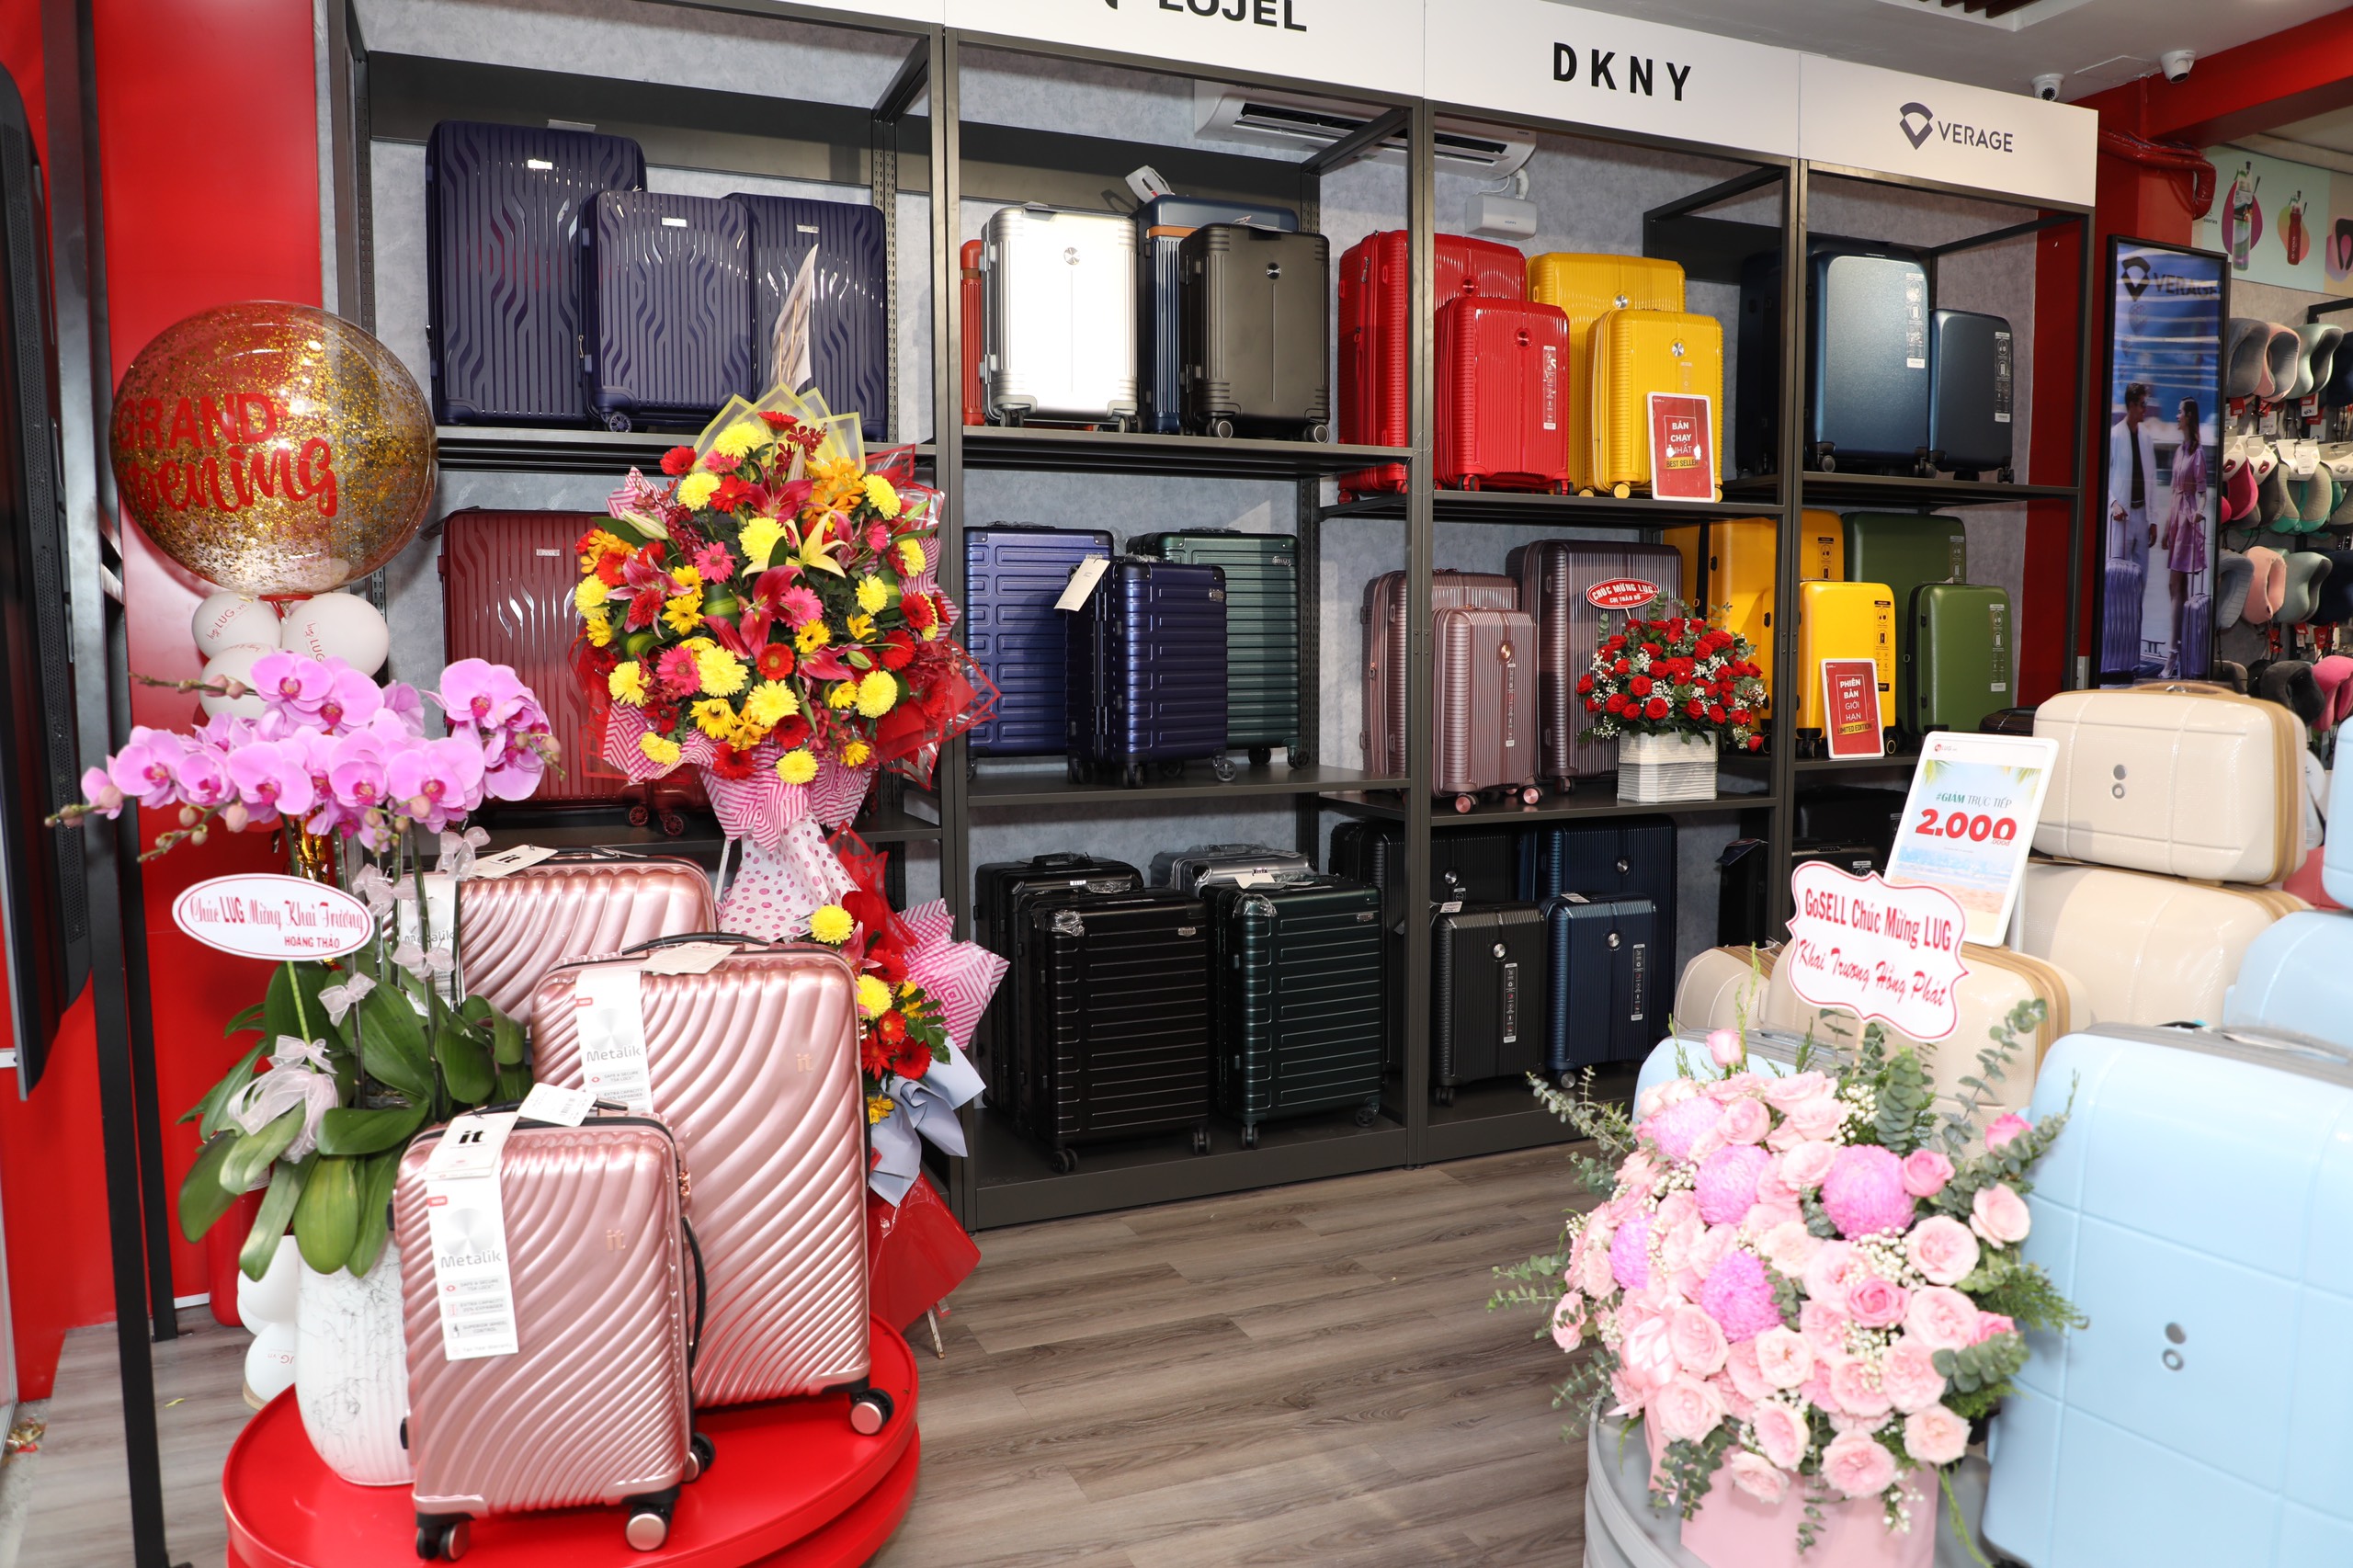 LUG.vn đồng loạt khai trương hai cửa hàng hành lý cao cấp tại Hà Nội và Thành phố Hồ Chí Minh - 3